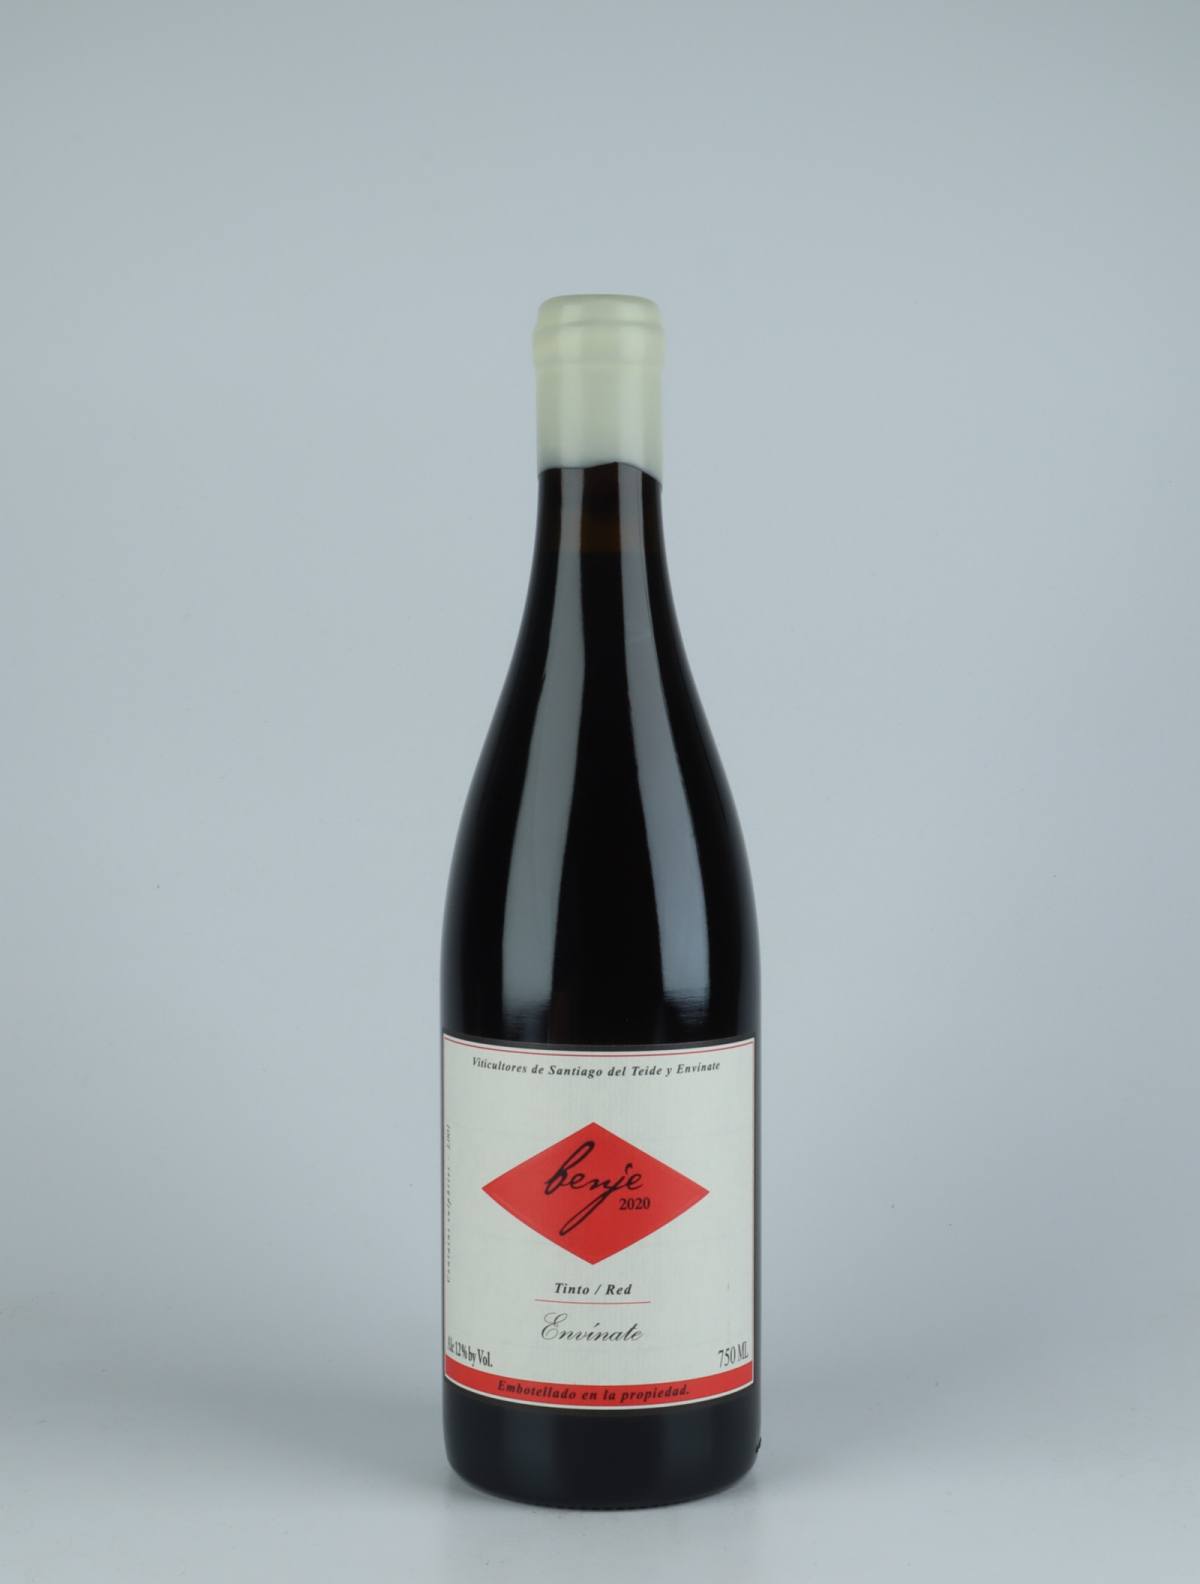 En flaske 2020 Benje Tinto - Tenerife Rødvin fra Envínate, Tenerife i Spanien